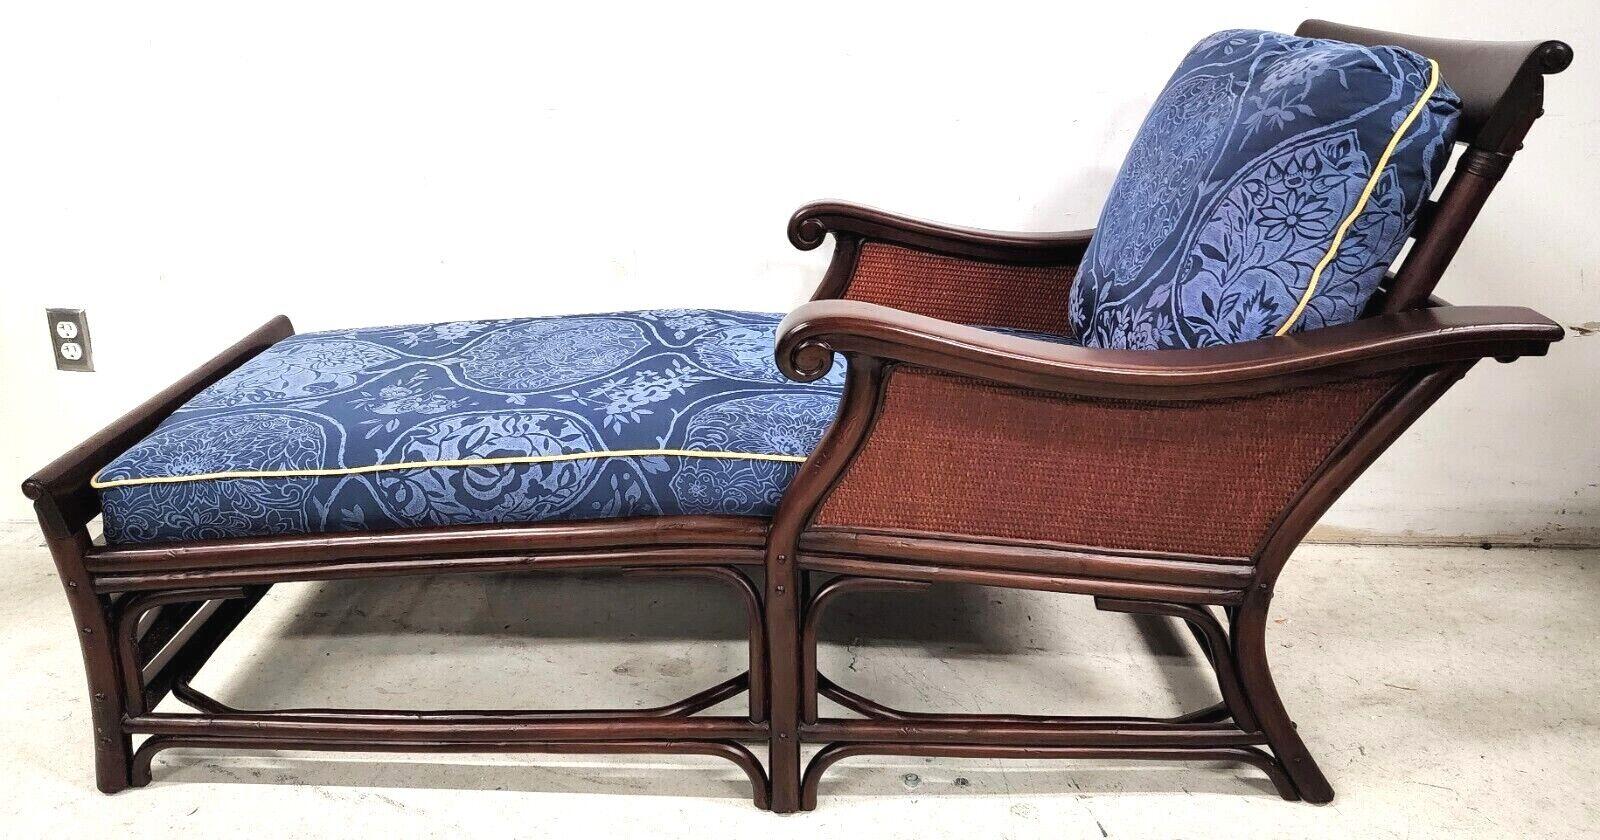 Nous vous proposons l'une de nos récentes acquisitions de meubles de prestige de Palm Beach Estate, à savoir 
Chaise longue en bois massif et osier de style anglo-indien PALECEK

Mesures approximatives en pouces
35